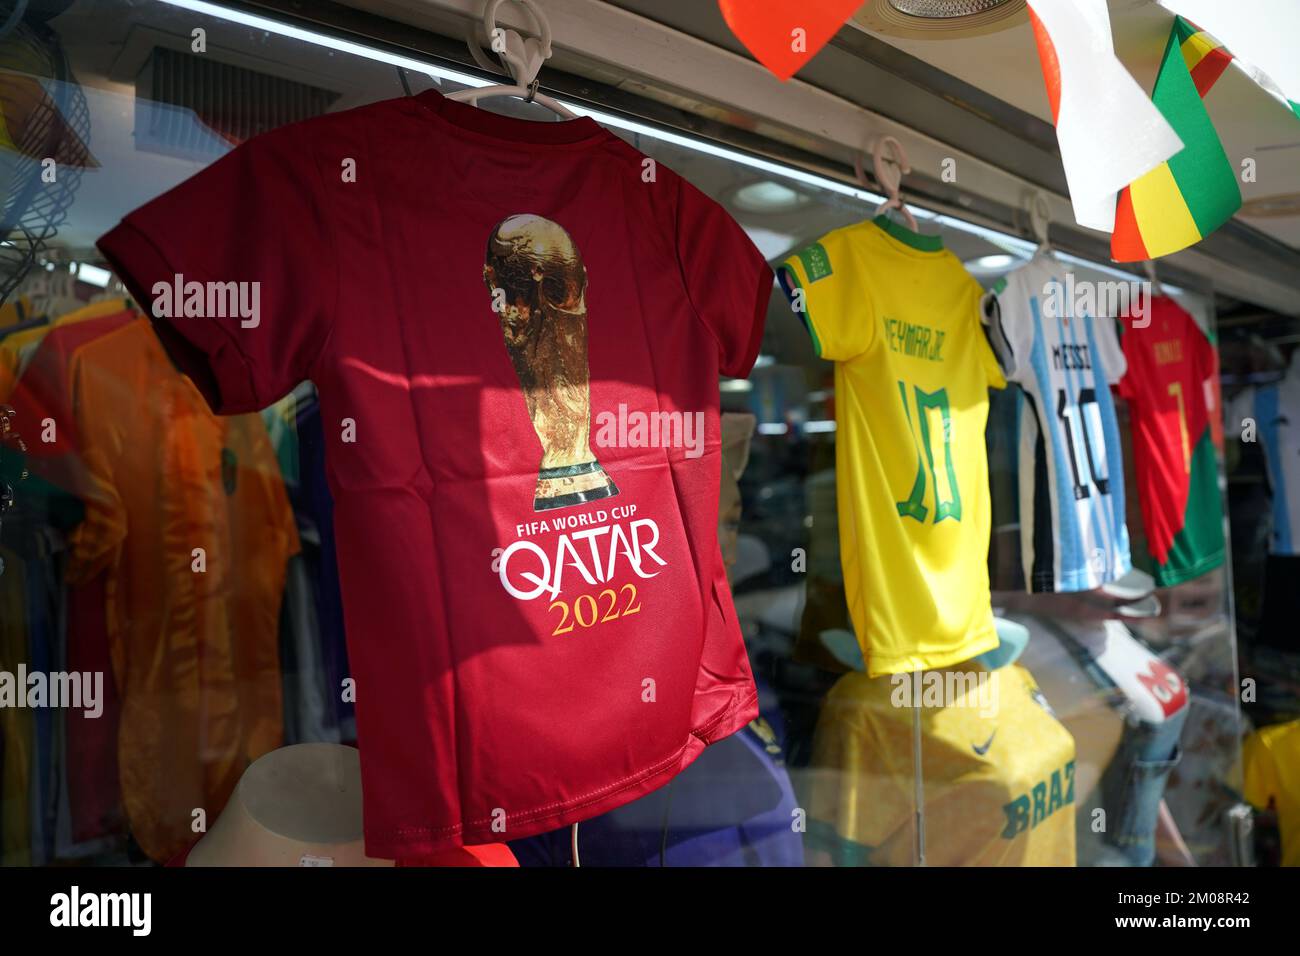 Magliette da calcio in vendita in un negozio nella zona Souq di Doha, con i  nomi di Neymar, messi e Ronaldo. Data immagine: Lunedì 5 dicembre 2022 Foto  stock - Alamy